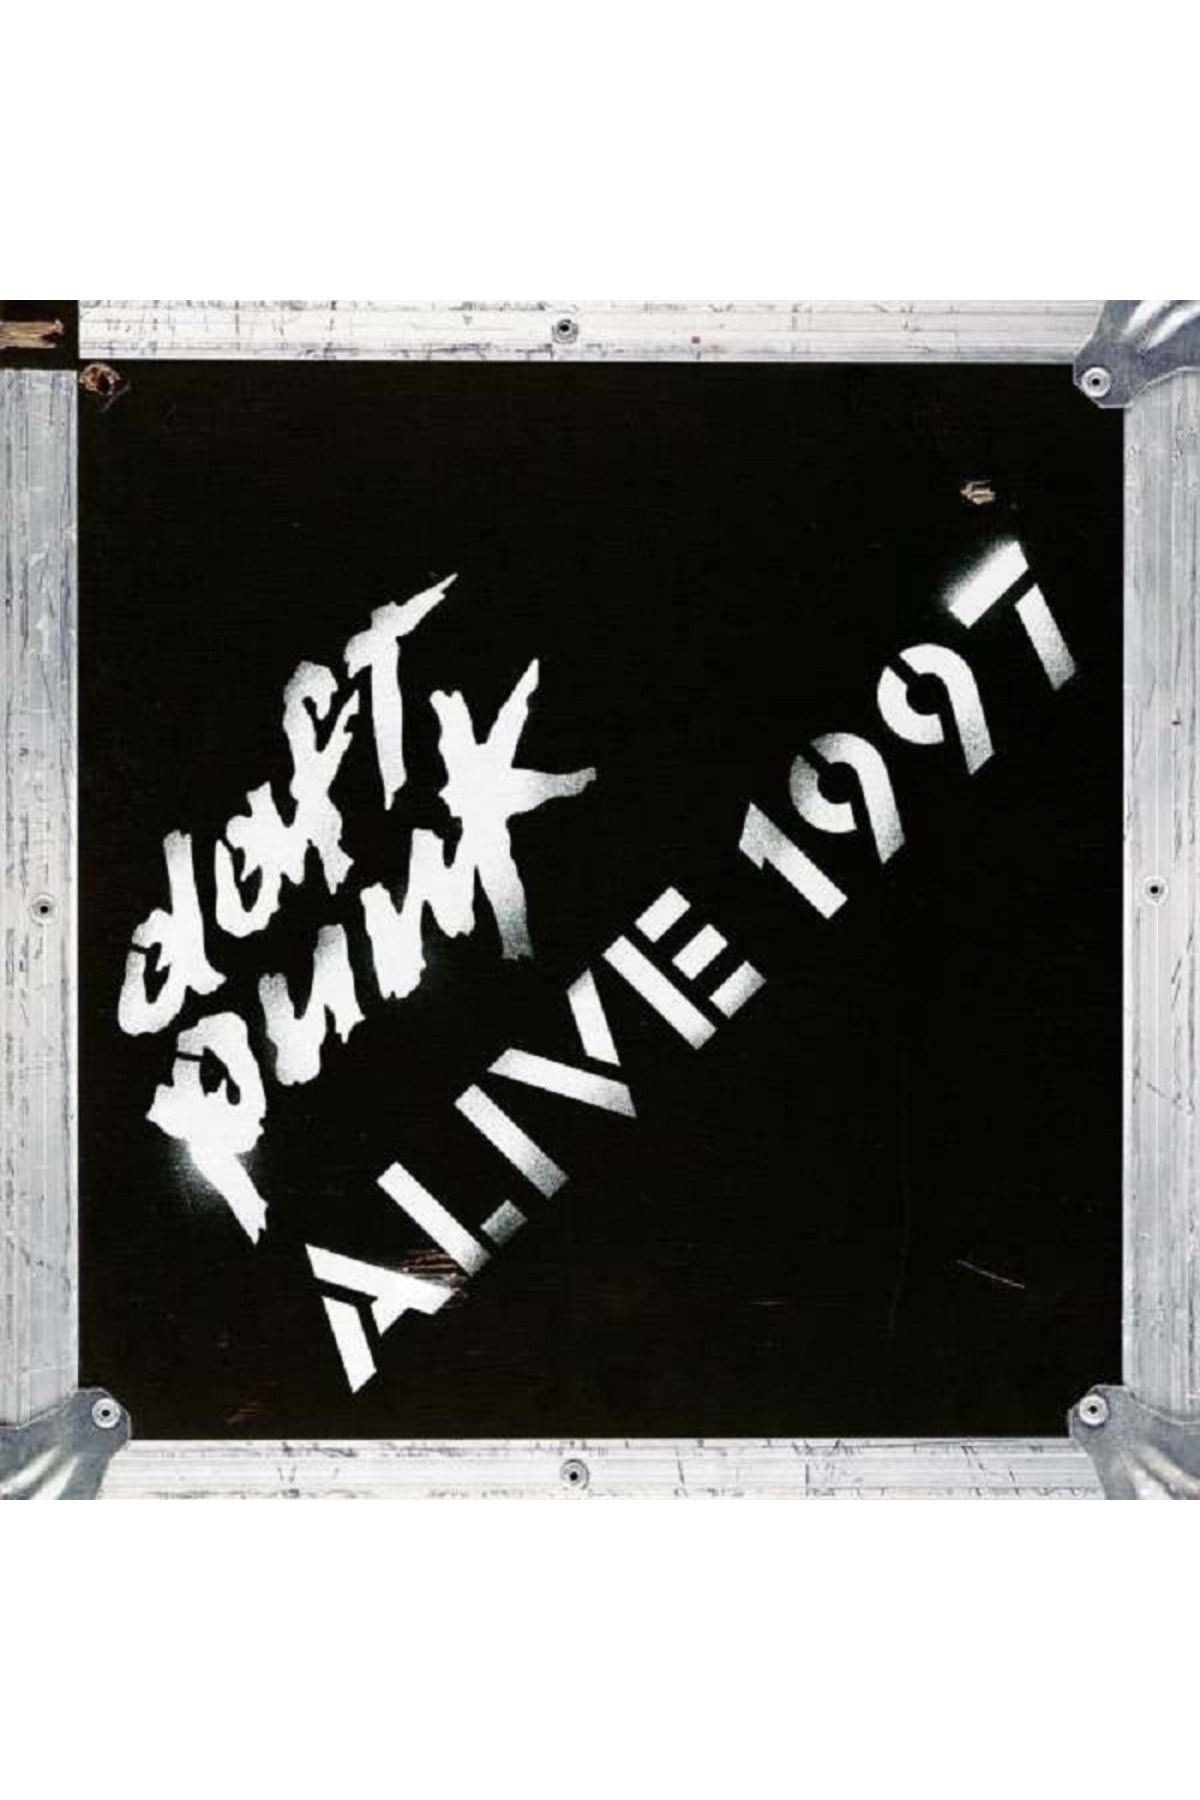 mazi plak Daft Punk - Alive 1997 Yeni Basım 33'lük Plak